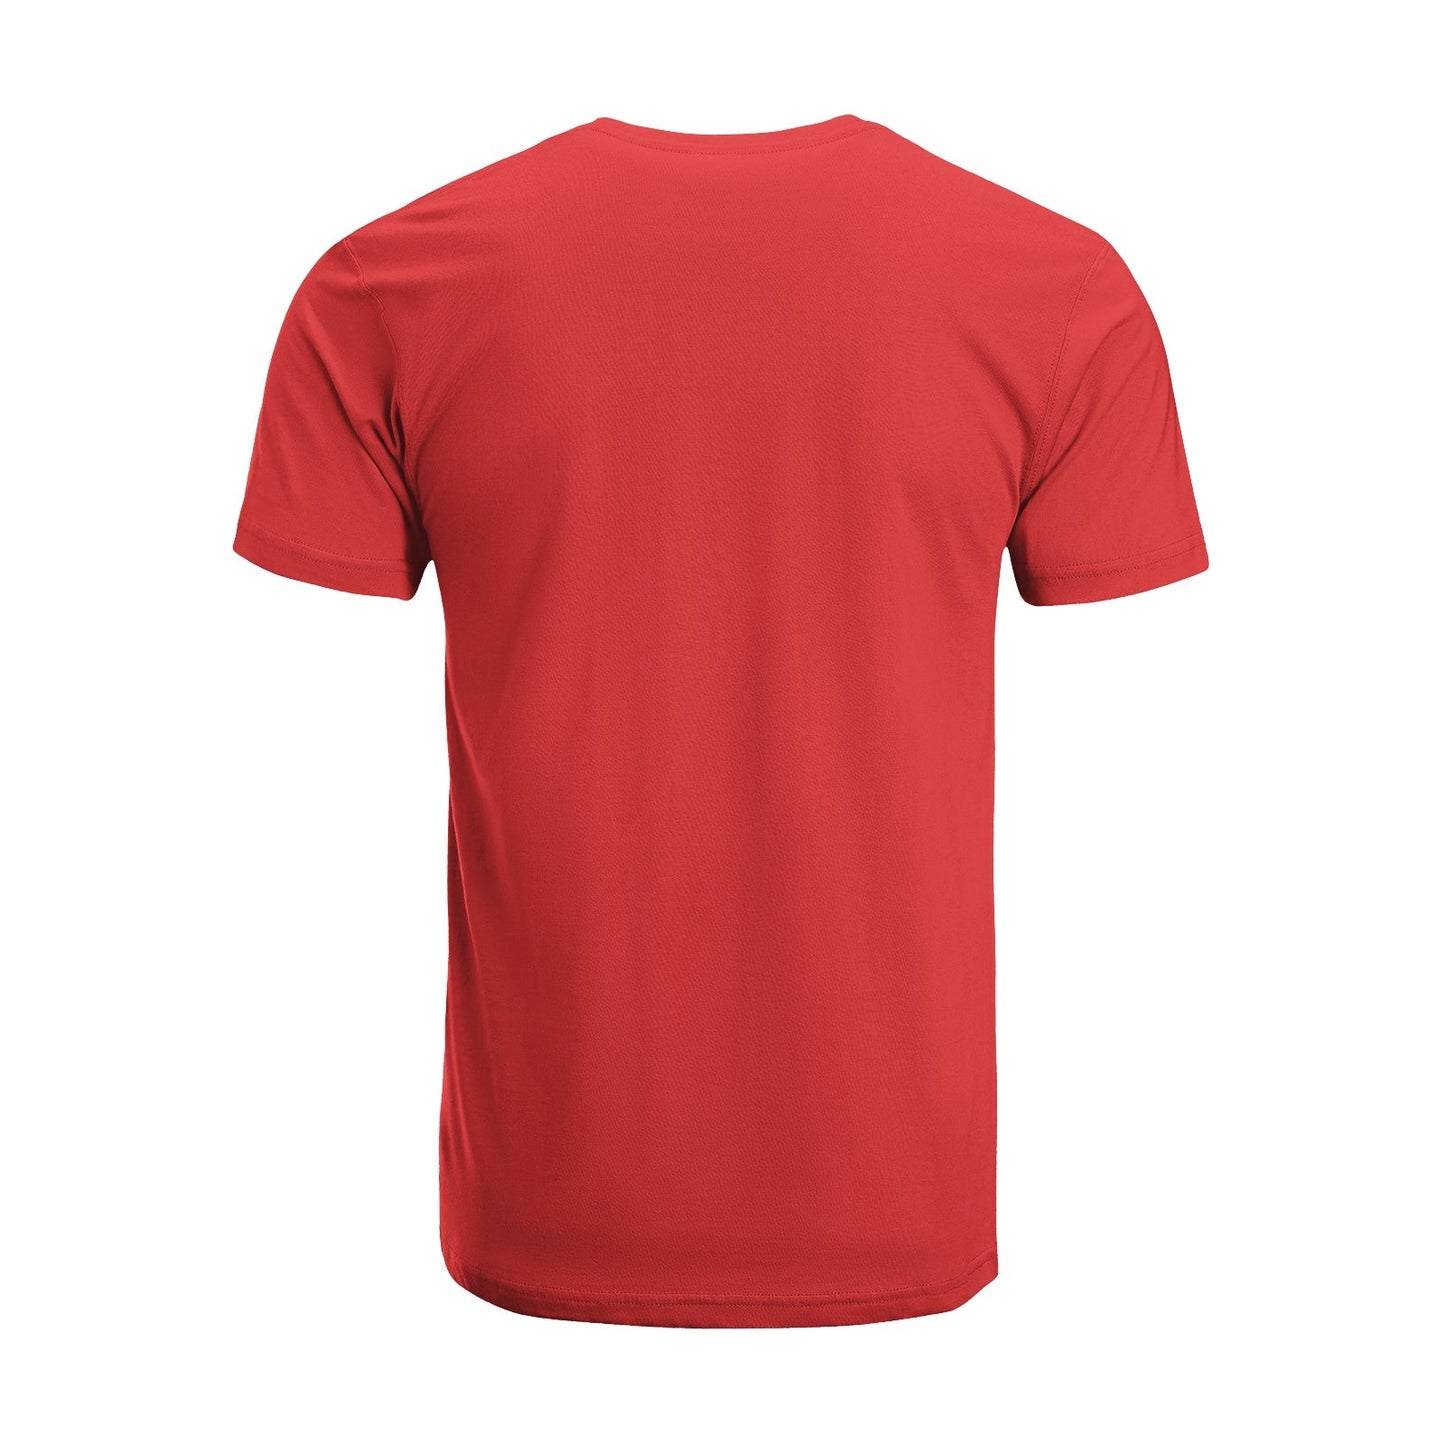 Unisex Short Sleeve Crew Neck Cotton Jersey T-Shirt TRUCK 10